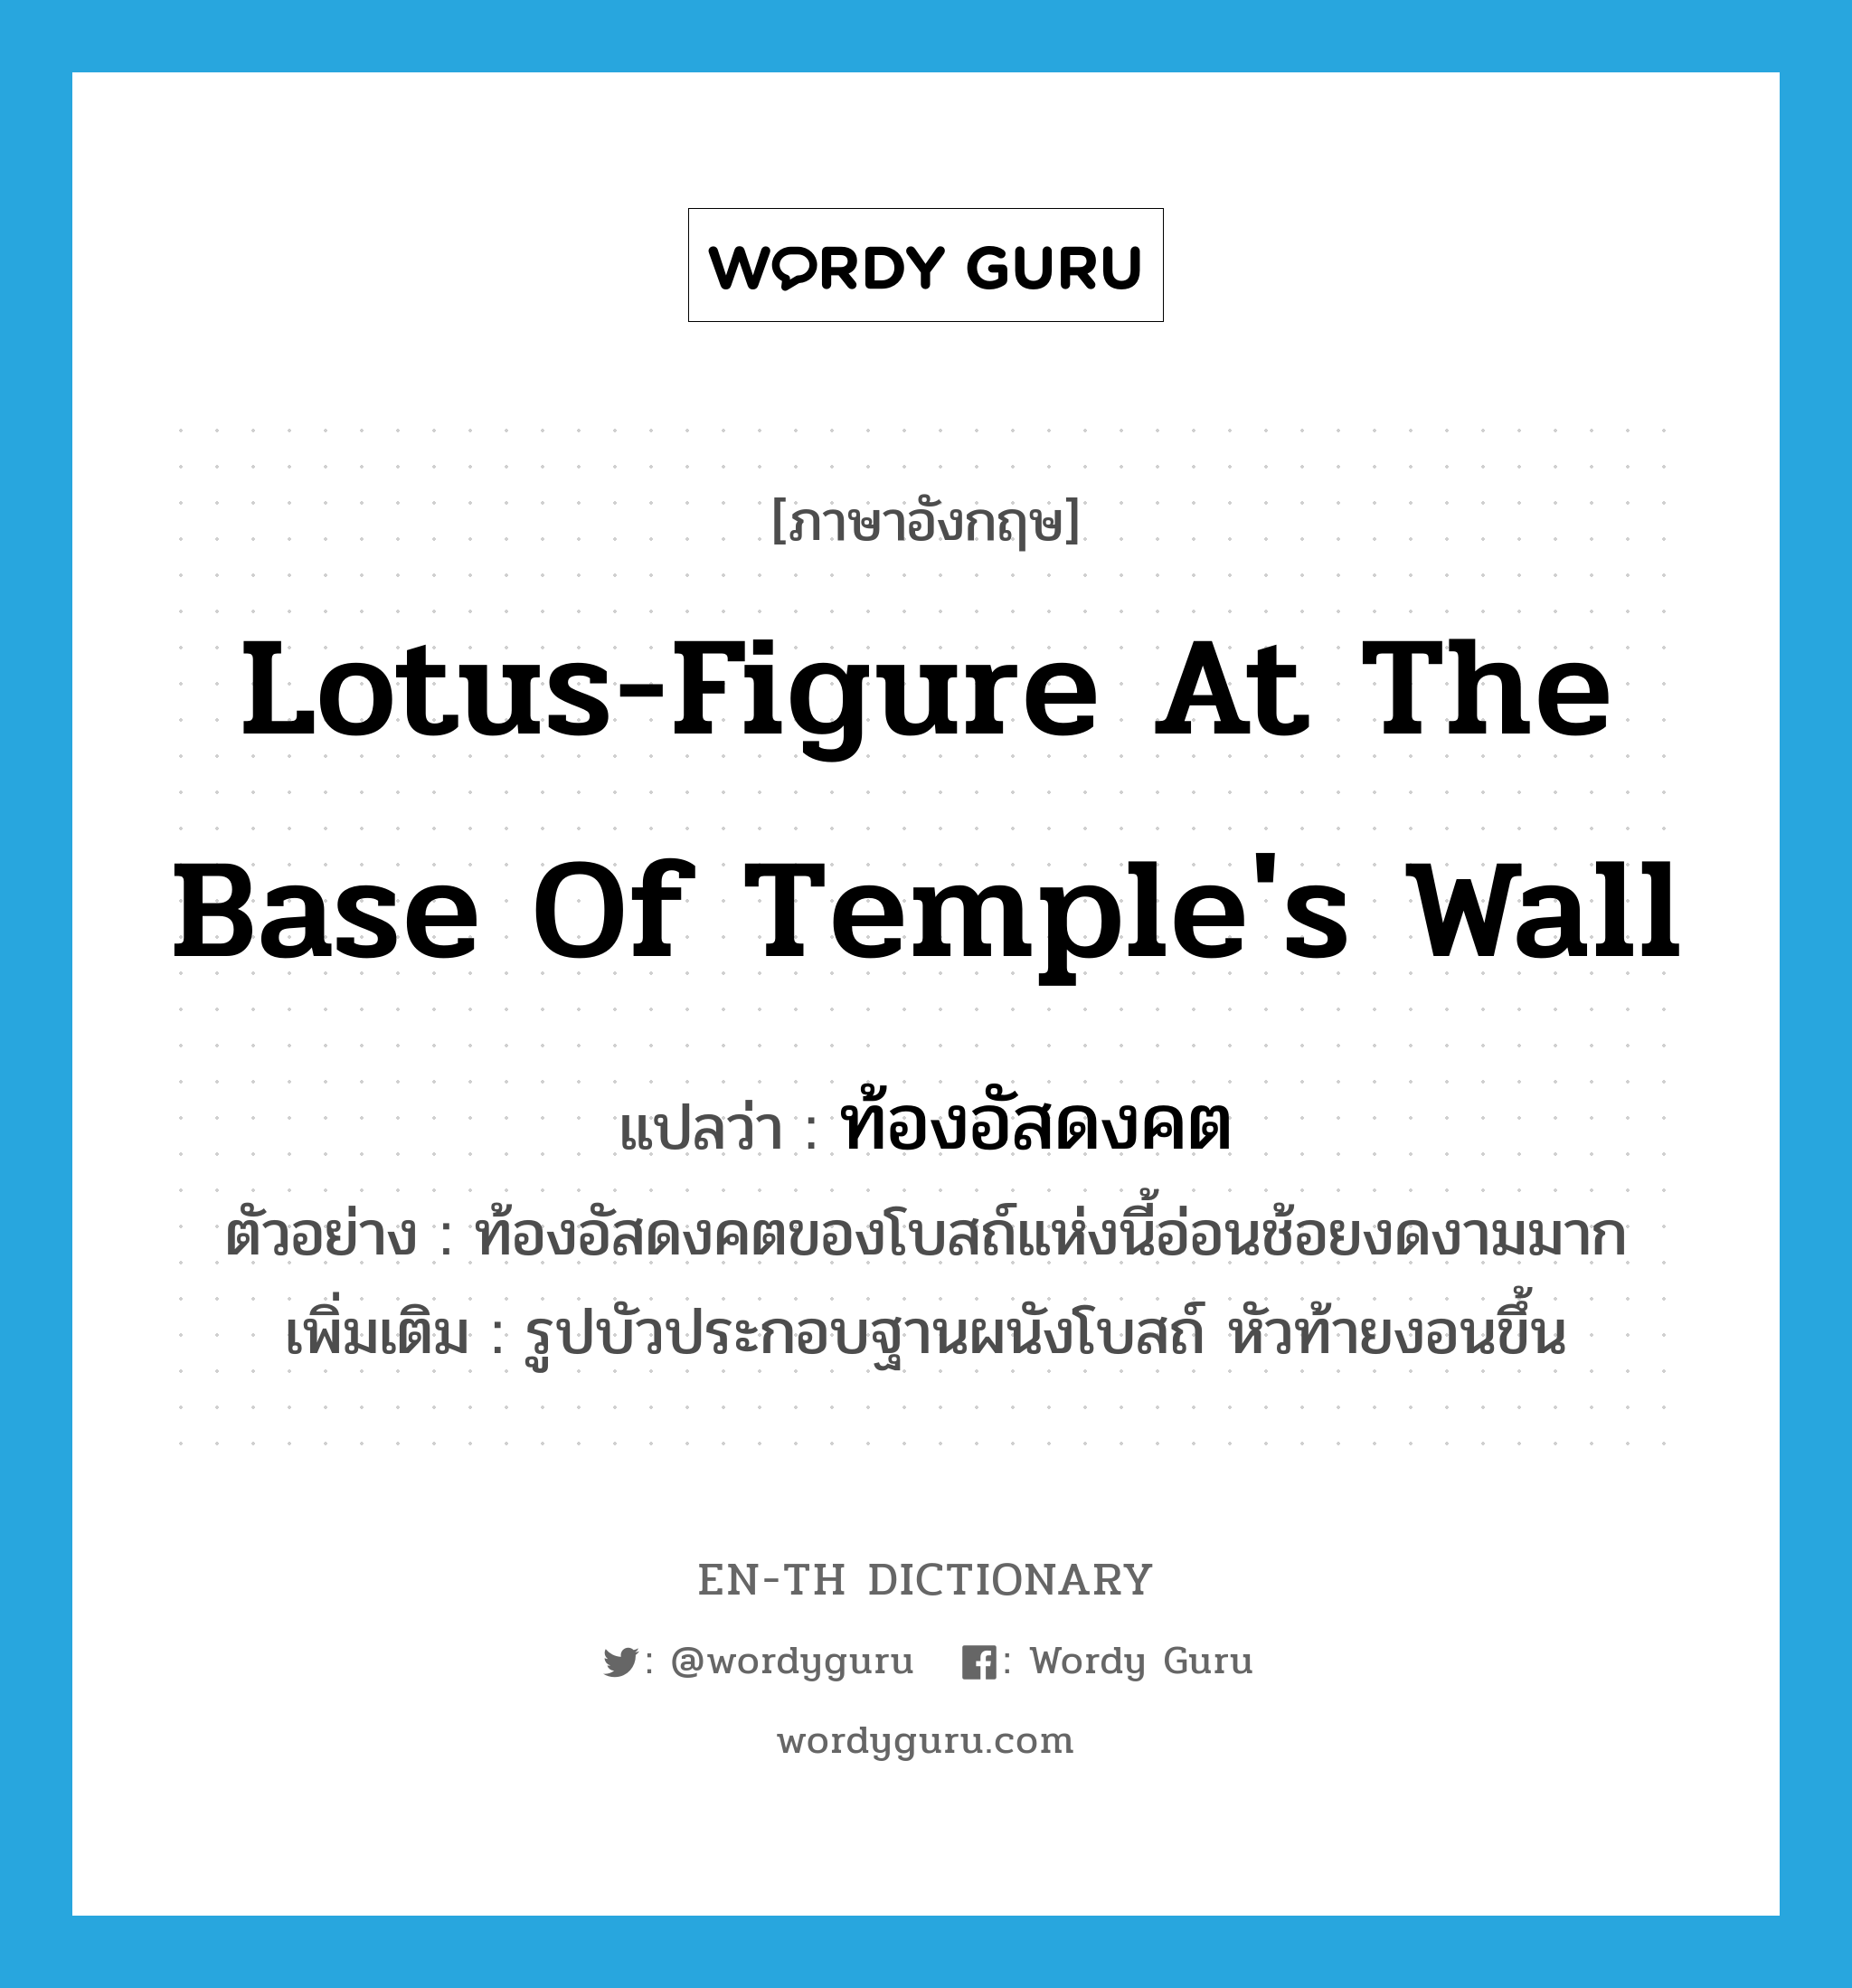 ท้องอัสดงคต ภาษาอังกฤษ?, คำศัพท์ภาษาอังกฤษ ท้องอัสดงคต แปลว่า lotus-figure at the base of temple's wall ประเภท N ตัวอย่าง ท้องอัสดงคตของโบสถ์แห่งนี้อ่อนช้อยงดงามมาก เพิ่มเติม รูปบัวประกอบฐานผนังโบสถ์ หัวท้ายงอนขึ้น หมวด N